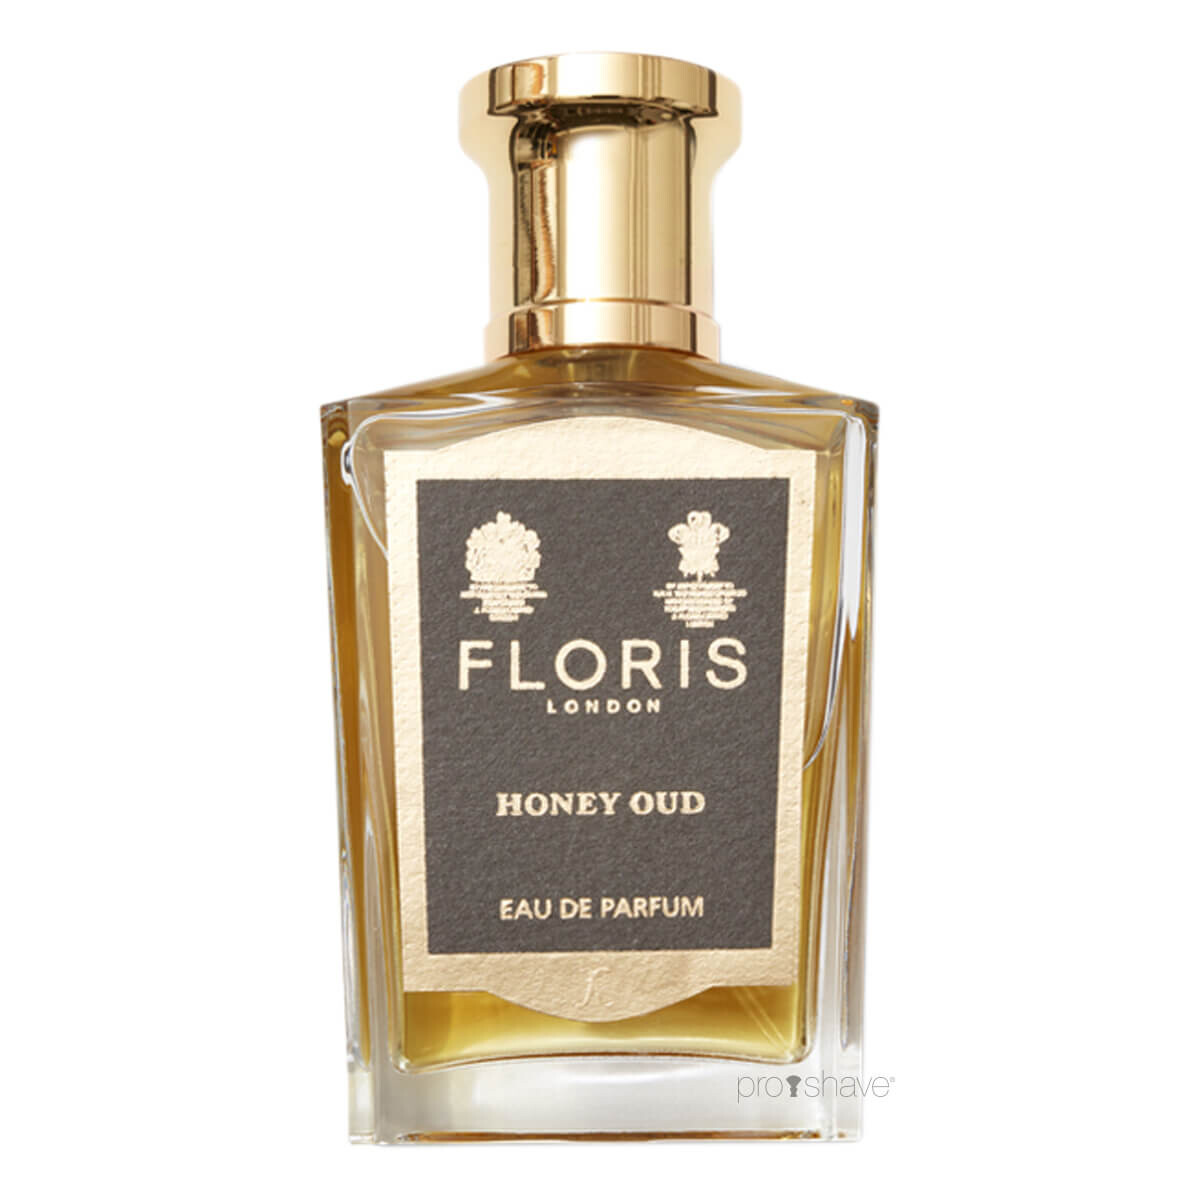 Billede af Floris Honey Oud, Eau de Parfum, 50 ml.